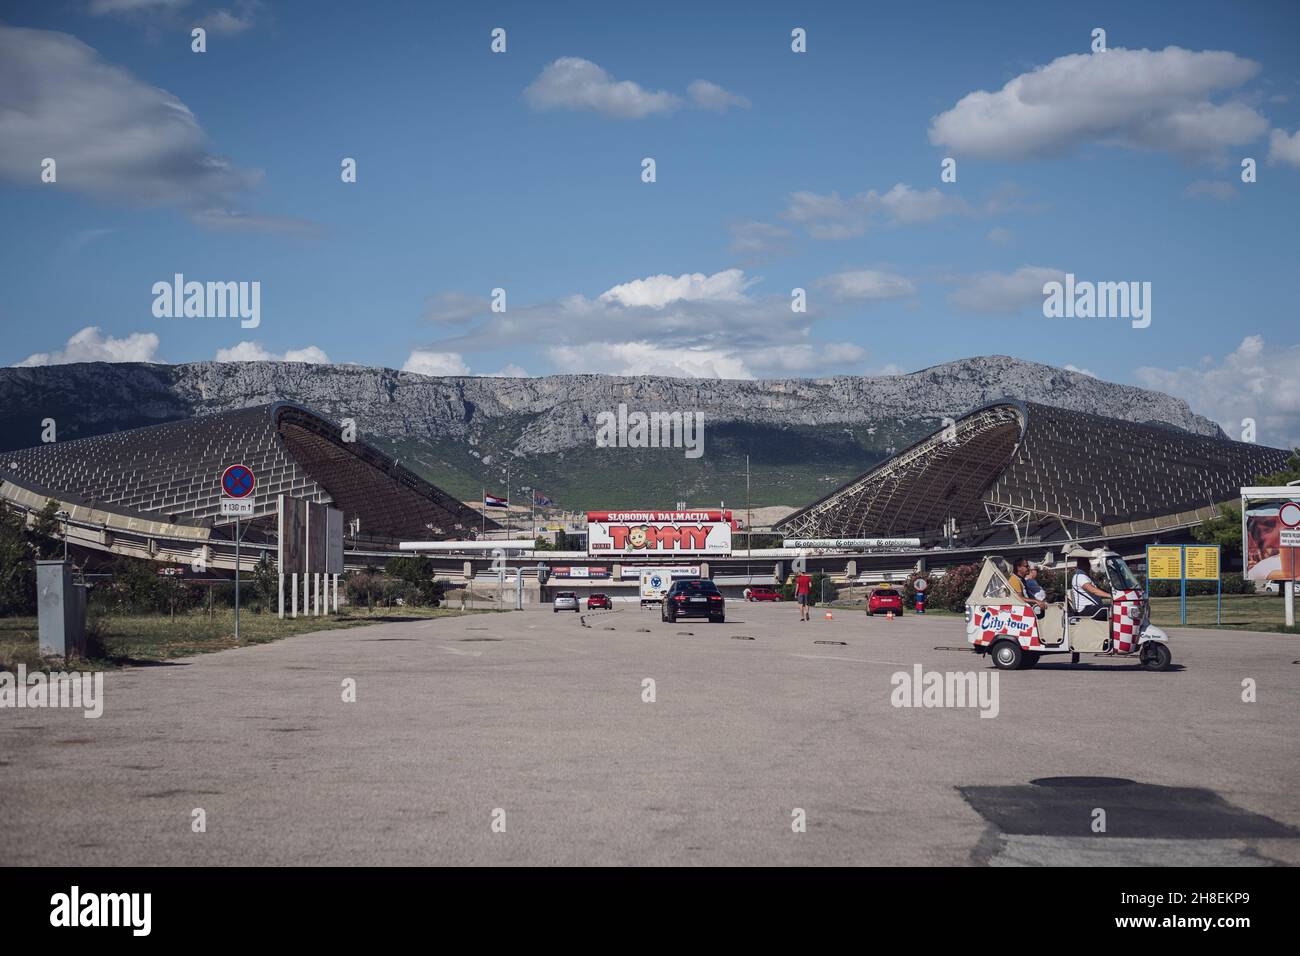 Außenansicht vom Stadion Poljud von Hajduk Split Foto de stock